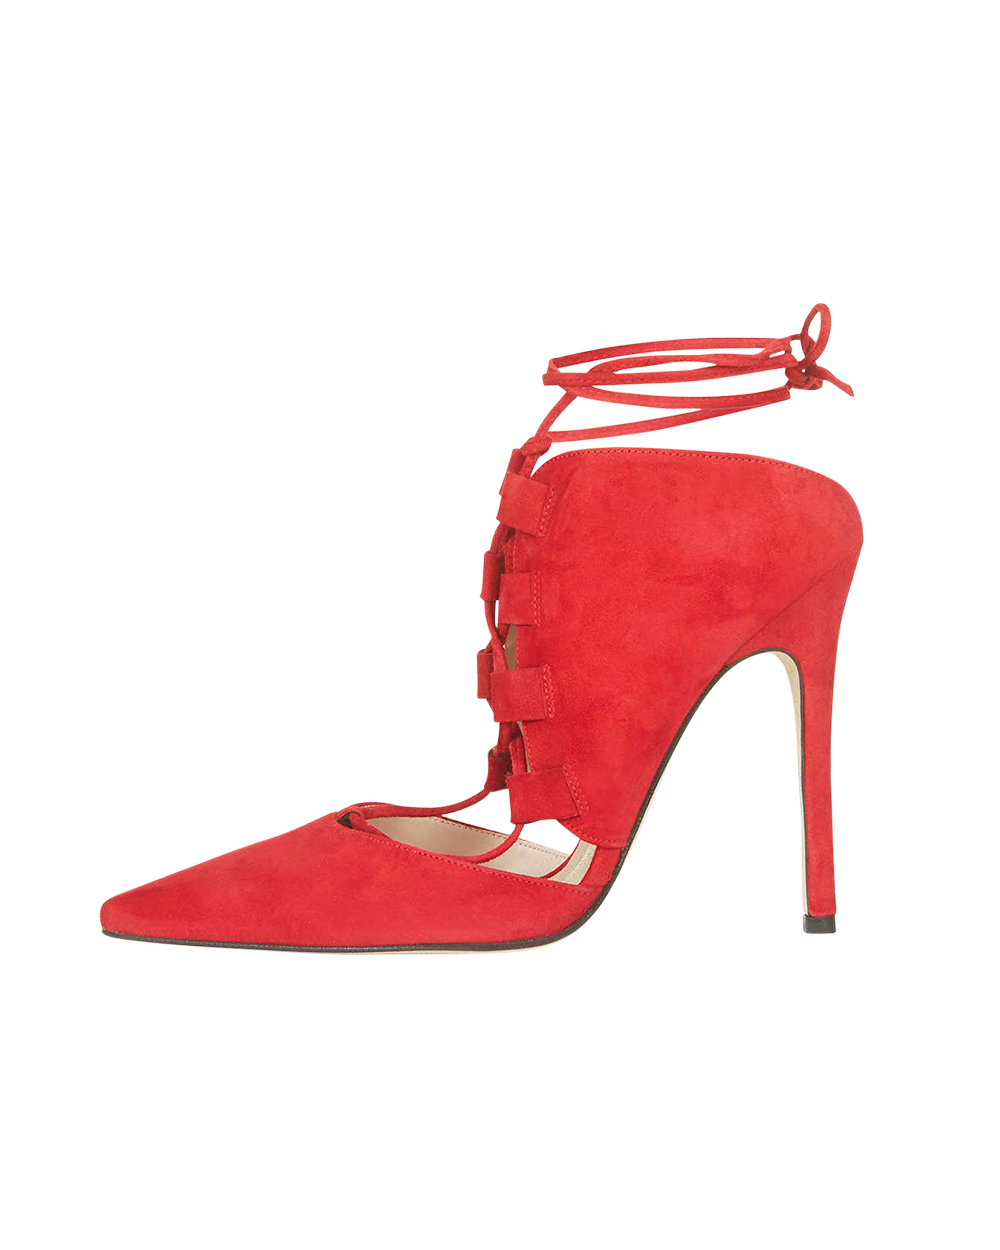 Topshop heels, $165